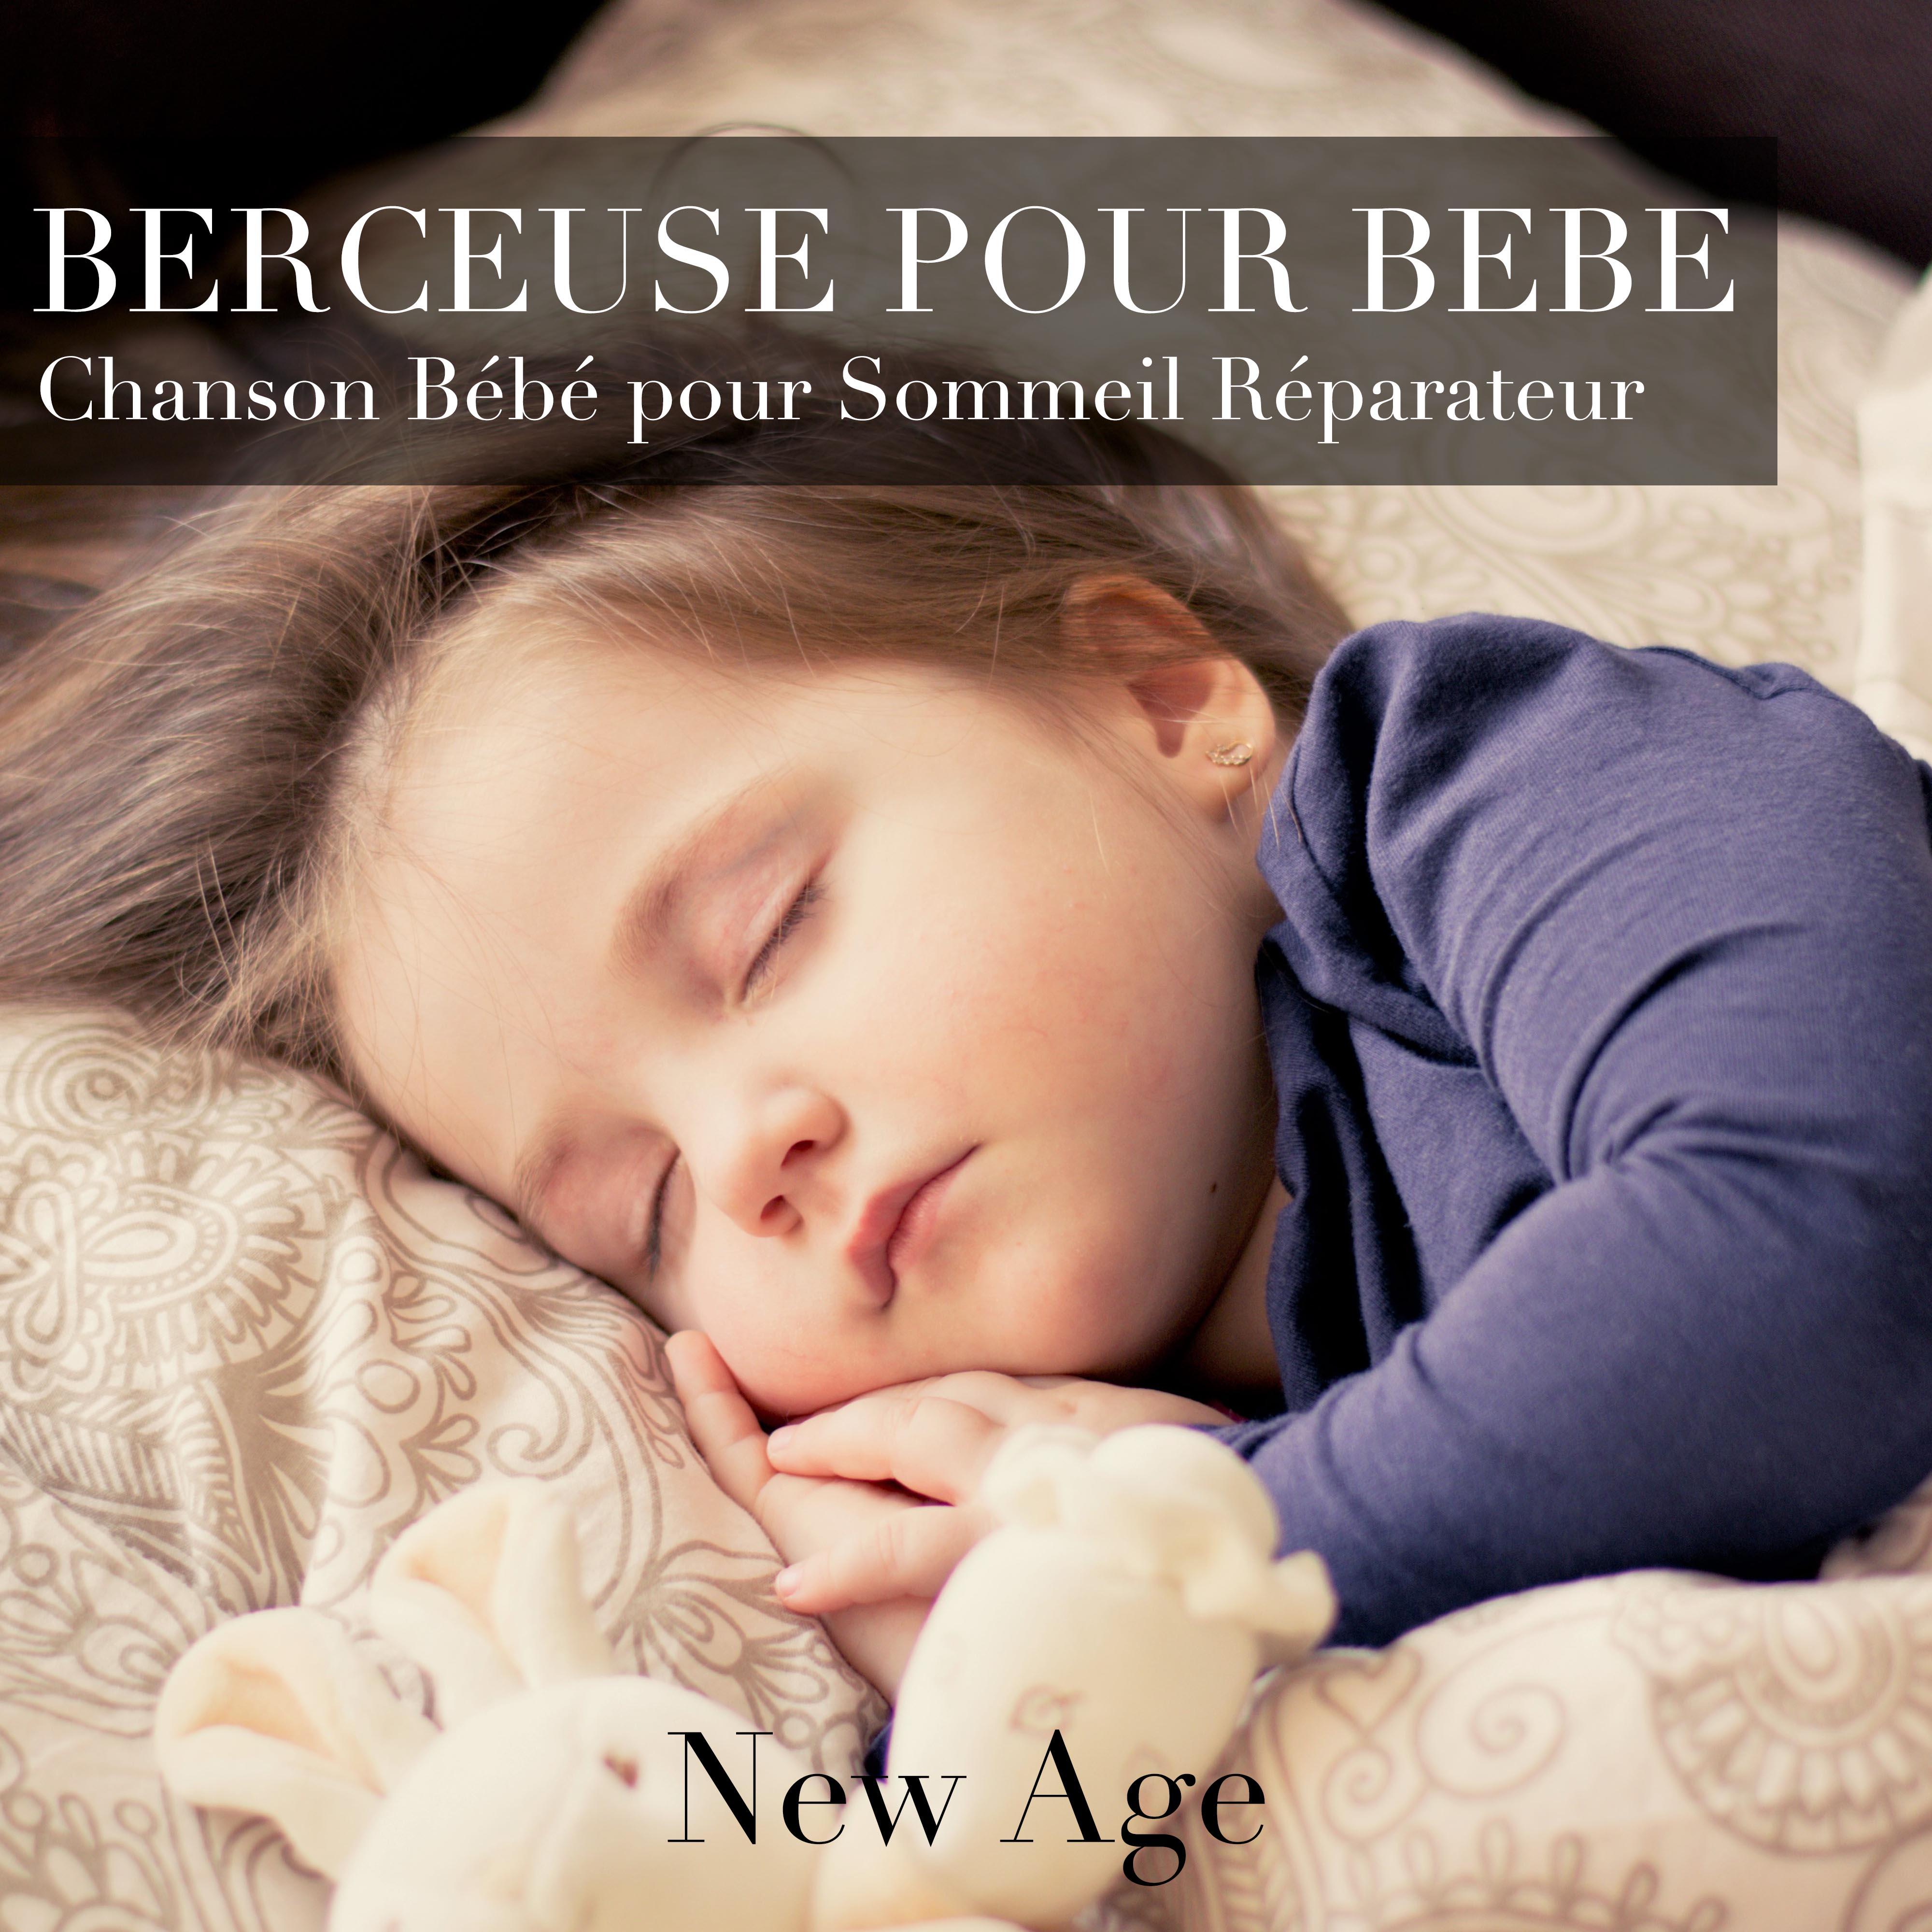 Berceuse pour Bebe: Chanson Be be et Chansons de De tente New Age pour Sommeil Re parateur